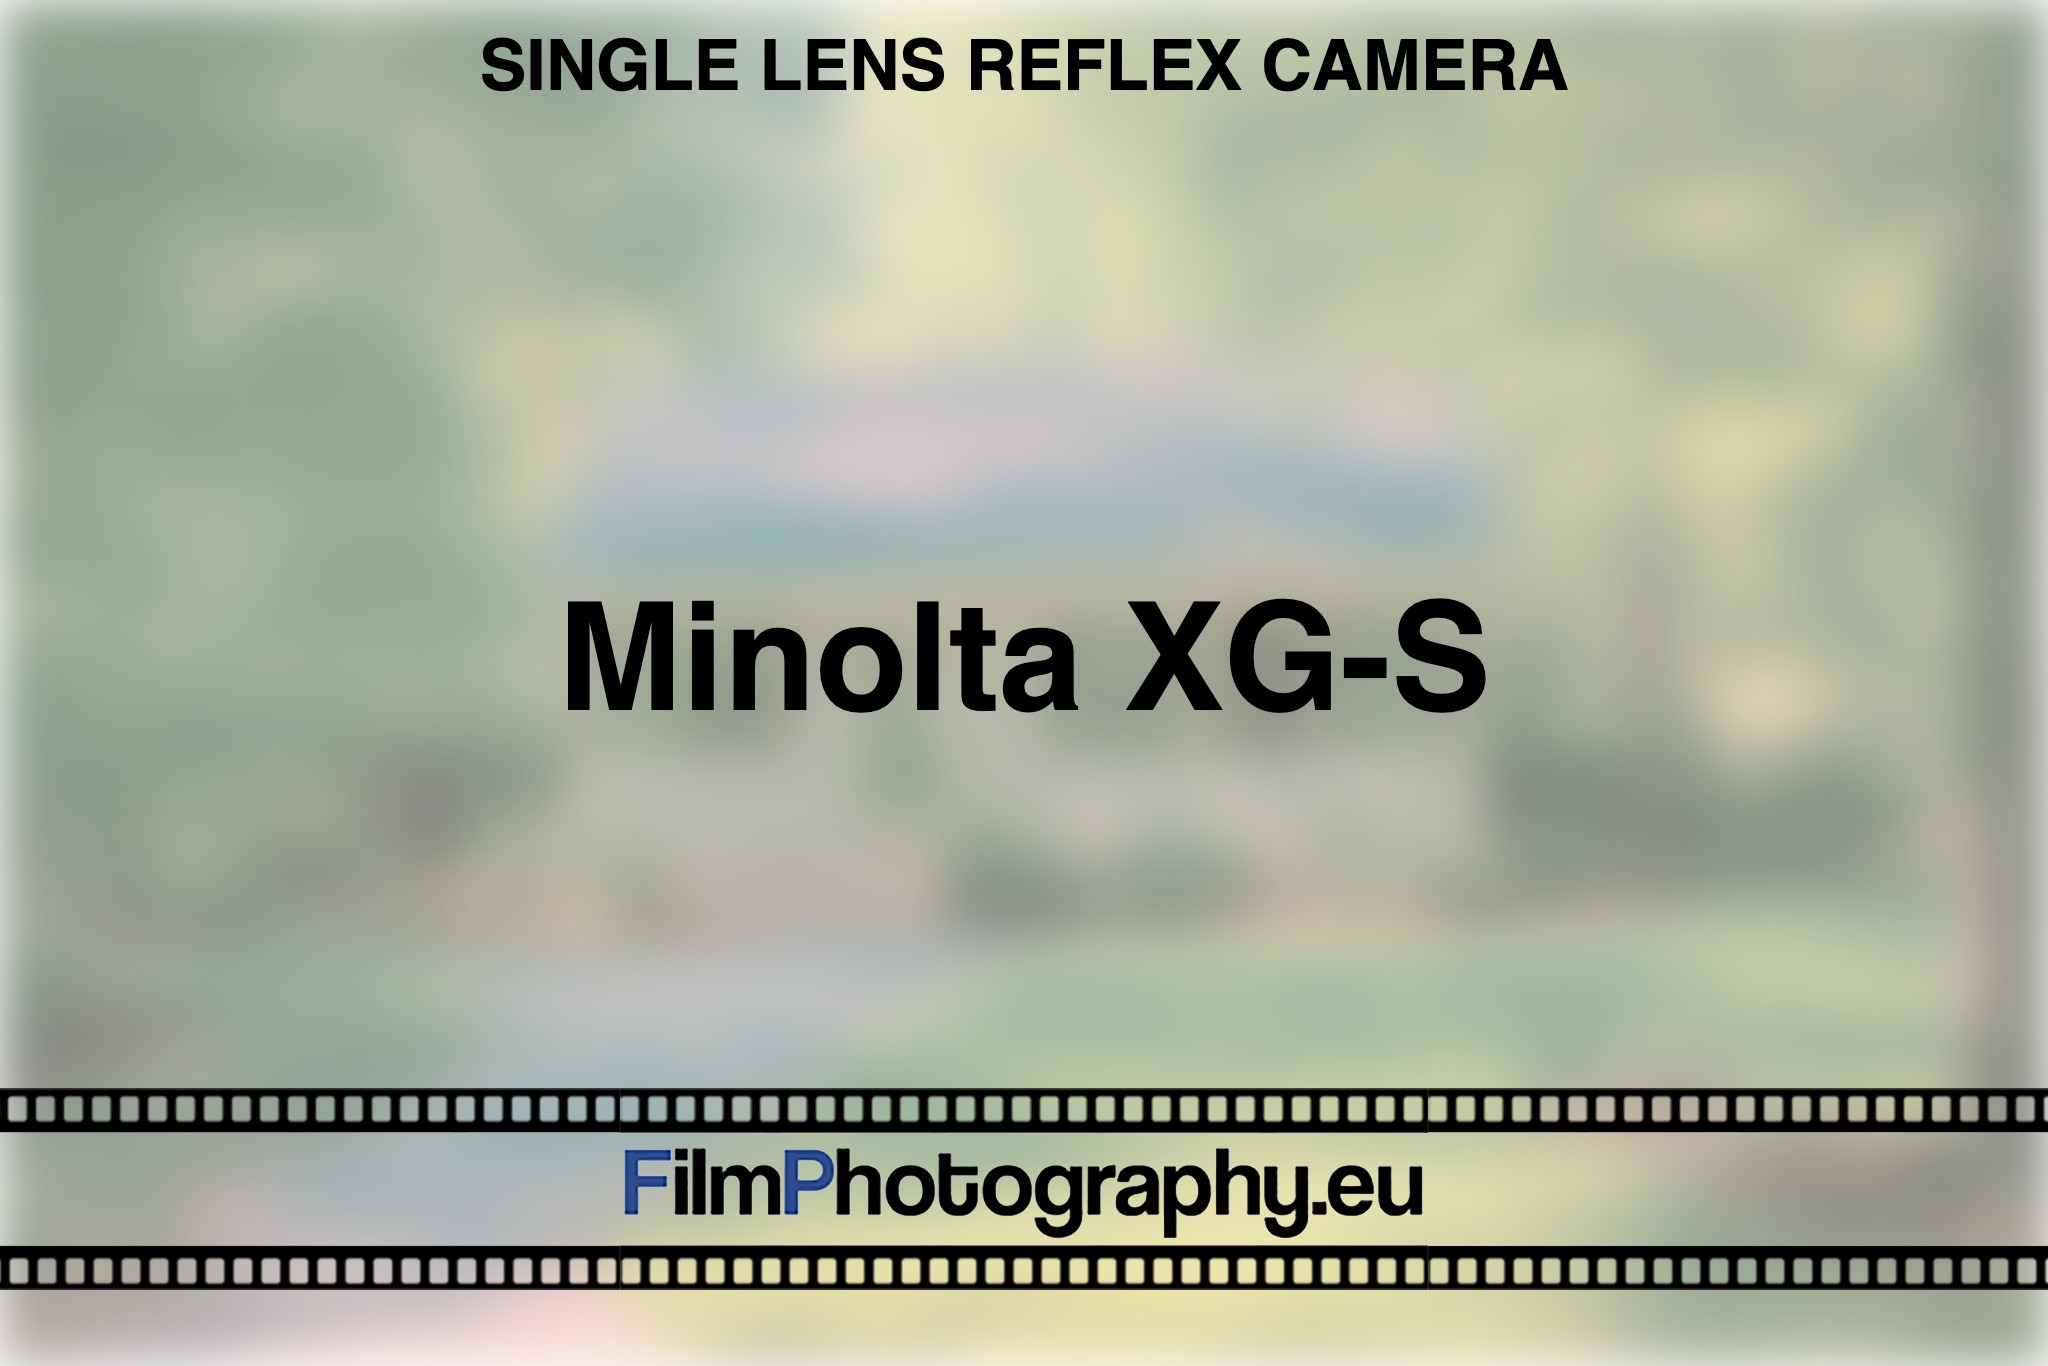 minolta-xg-s-single-lens-reflex-camera-bnv